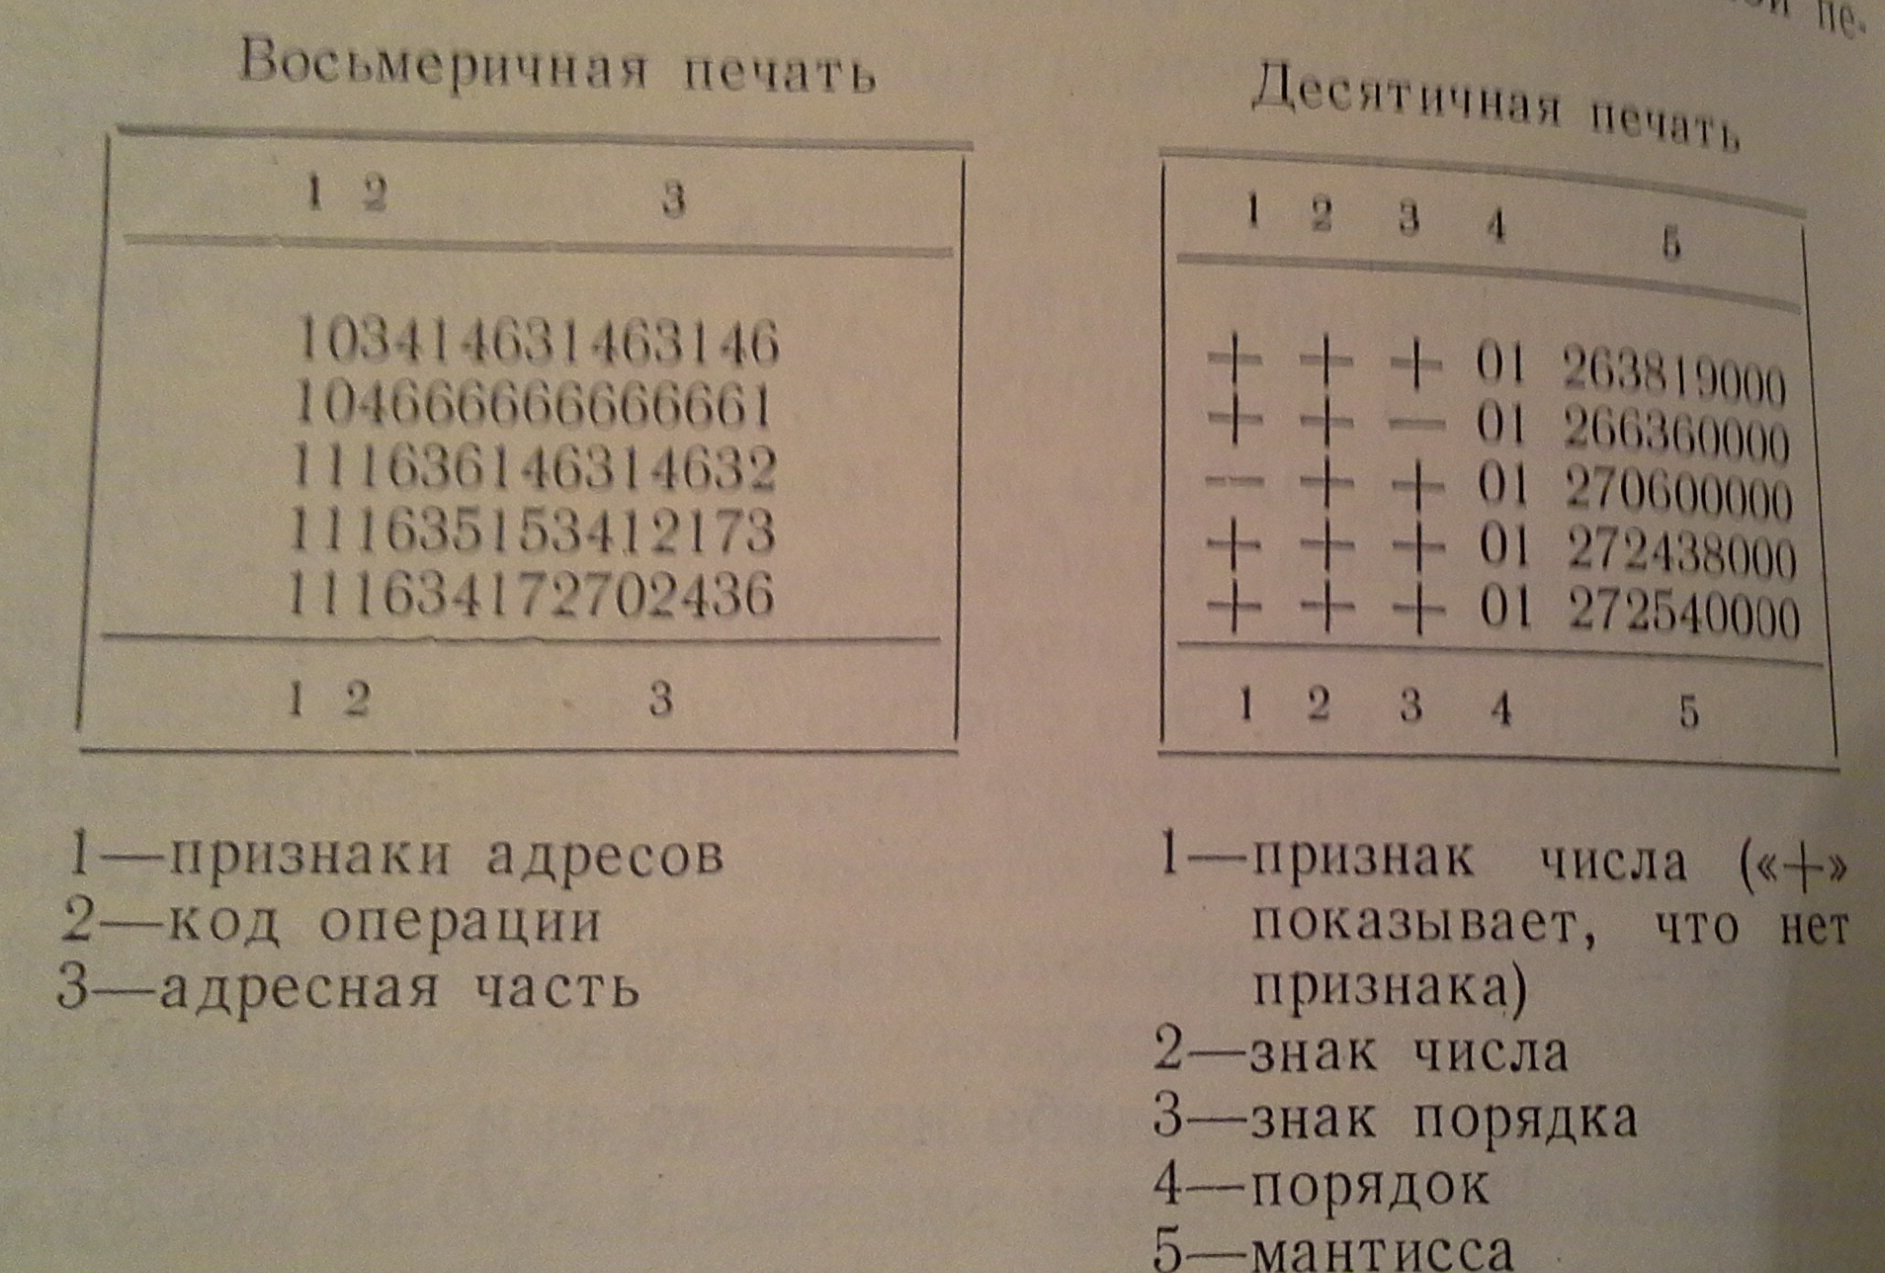 М-20. Печать восьмеричная и десятичная. 1963